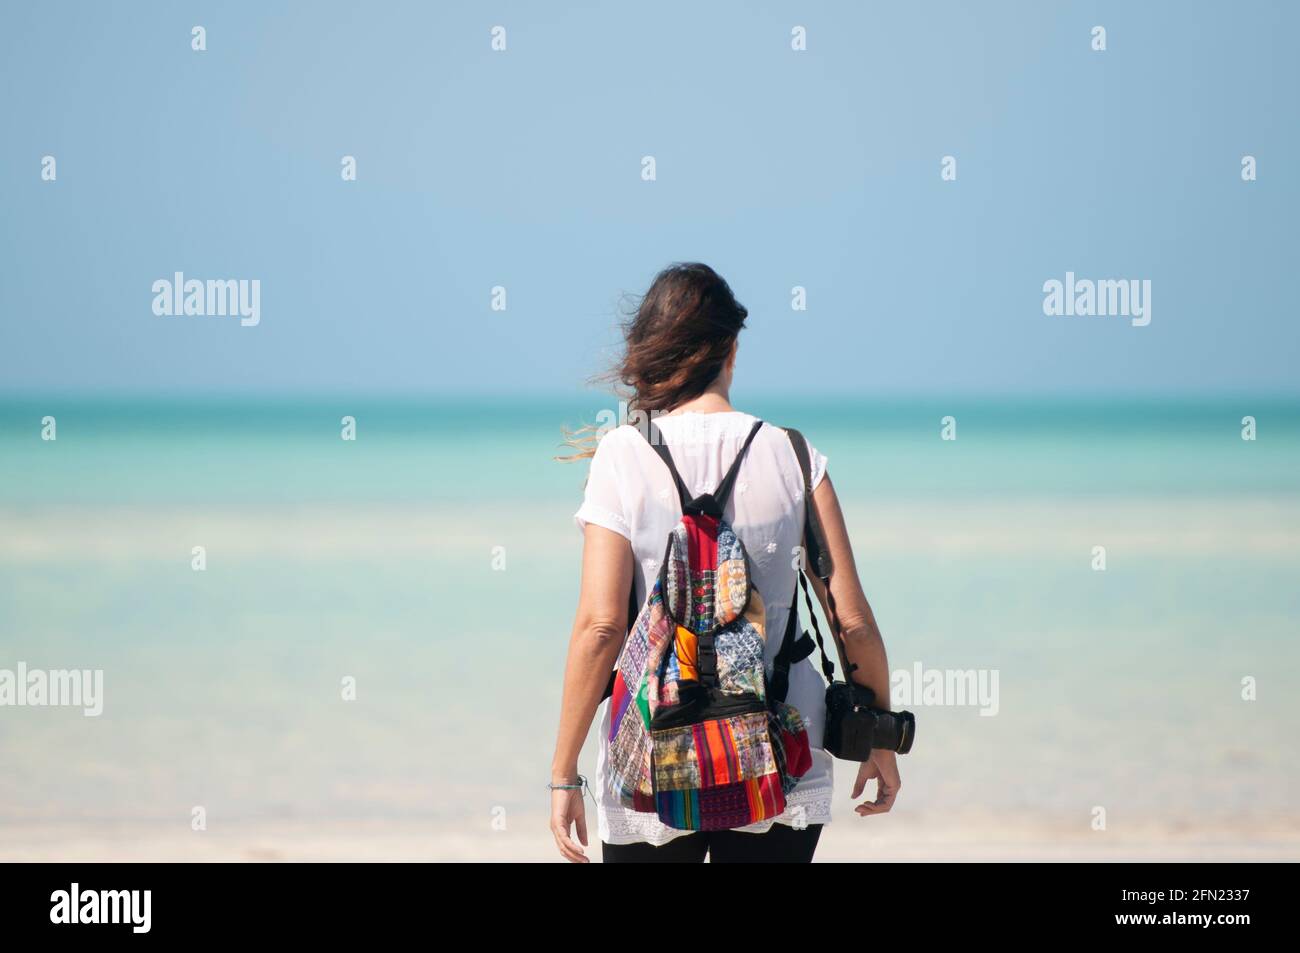 Retrovisione di una giovane donna sconosciuta che guarda verso il mare. Una fotografa con uno zaino sulle spalle e una macchina fotografica. Sullo sfondo i Caraibi messicani Foto Stock